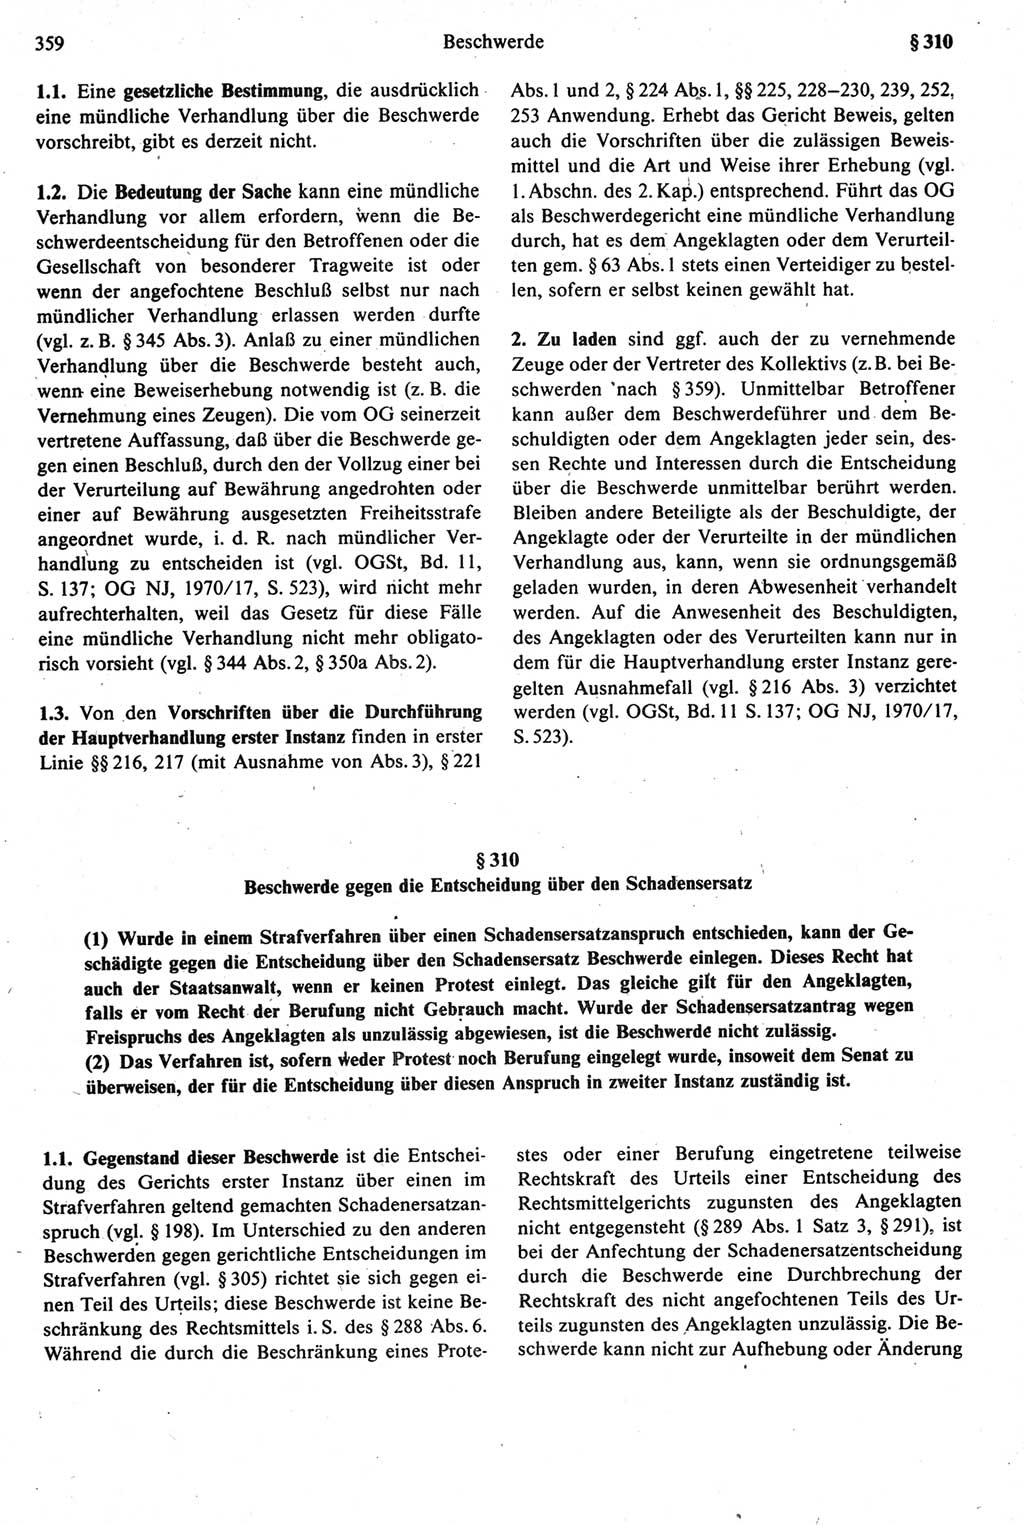 Strafprozeßrecht der DDR [Deutsche Demokratische Republik], Kommentar zur Strafprozeßordnung (StPO) 1987, Seite 359 (Strafprozeßr. DDR Komm. StPO 1987, S. 359)